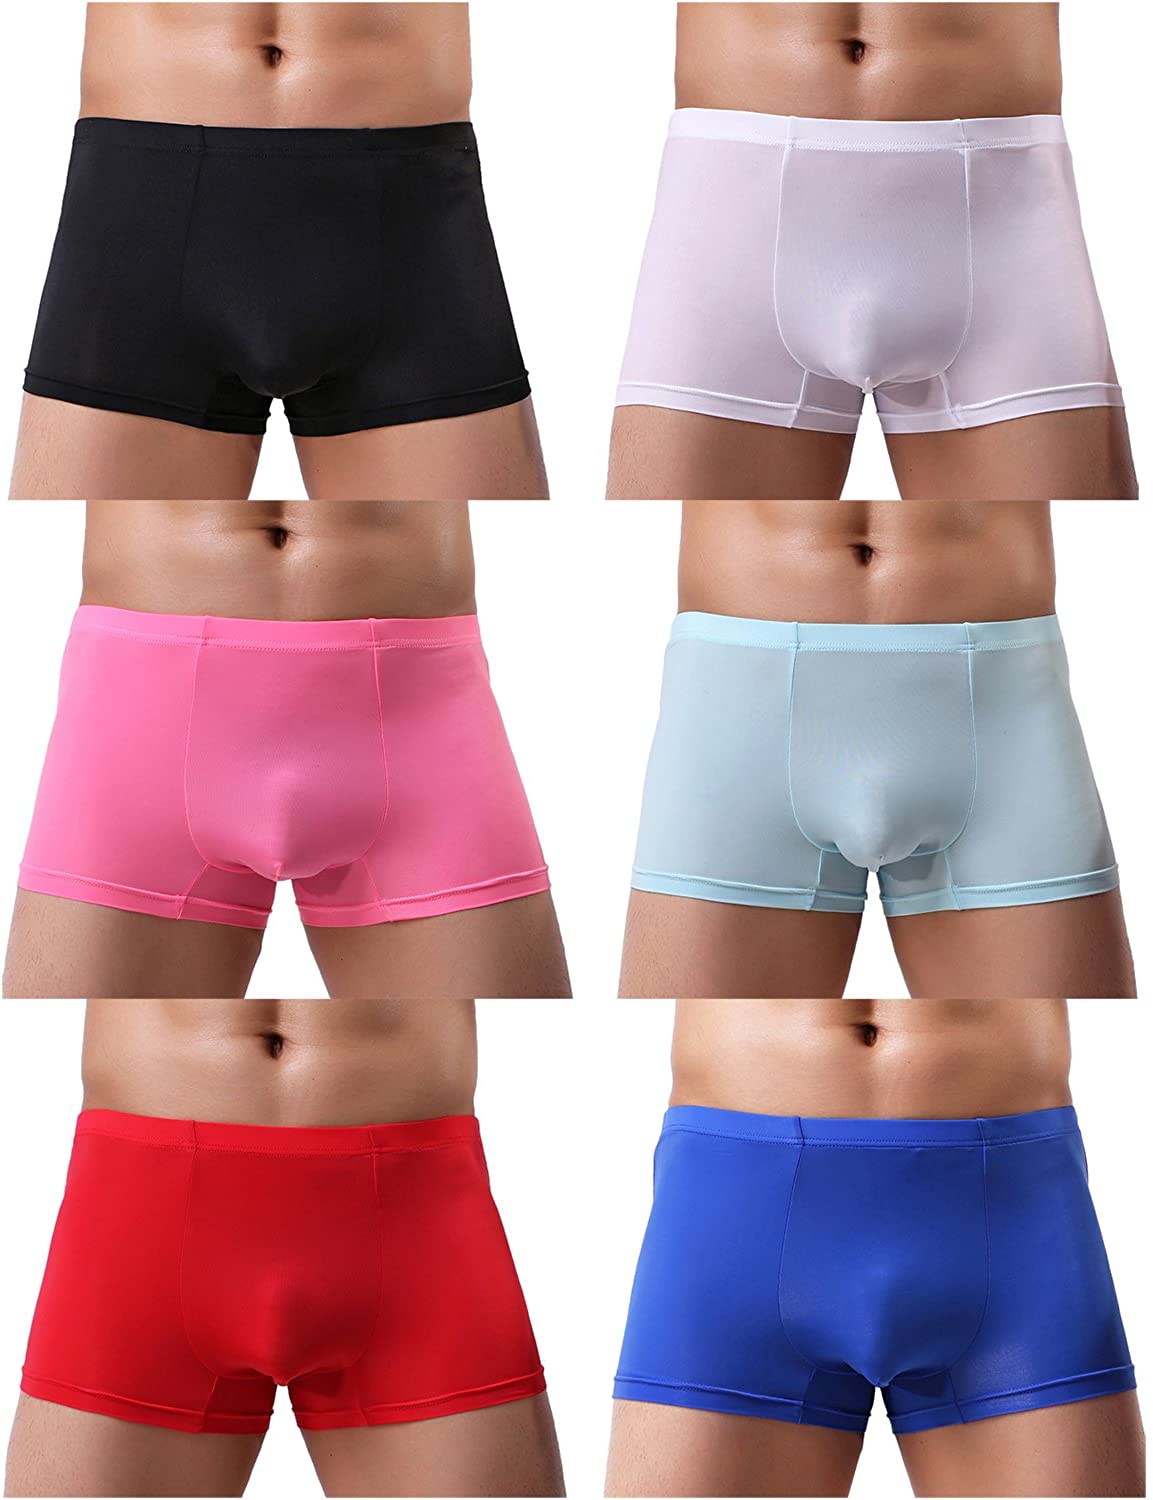 YuKaiChen Men's Trunks Underwear Silk Boxer Briefs Short Leg | eBay